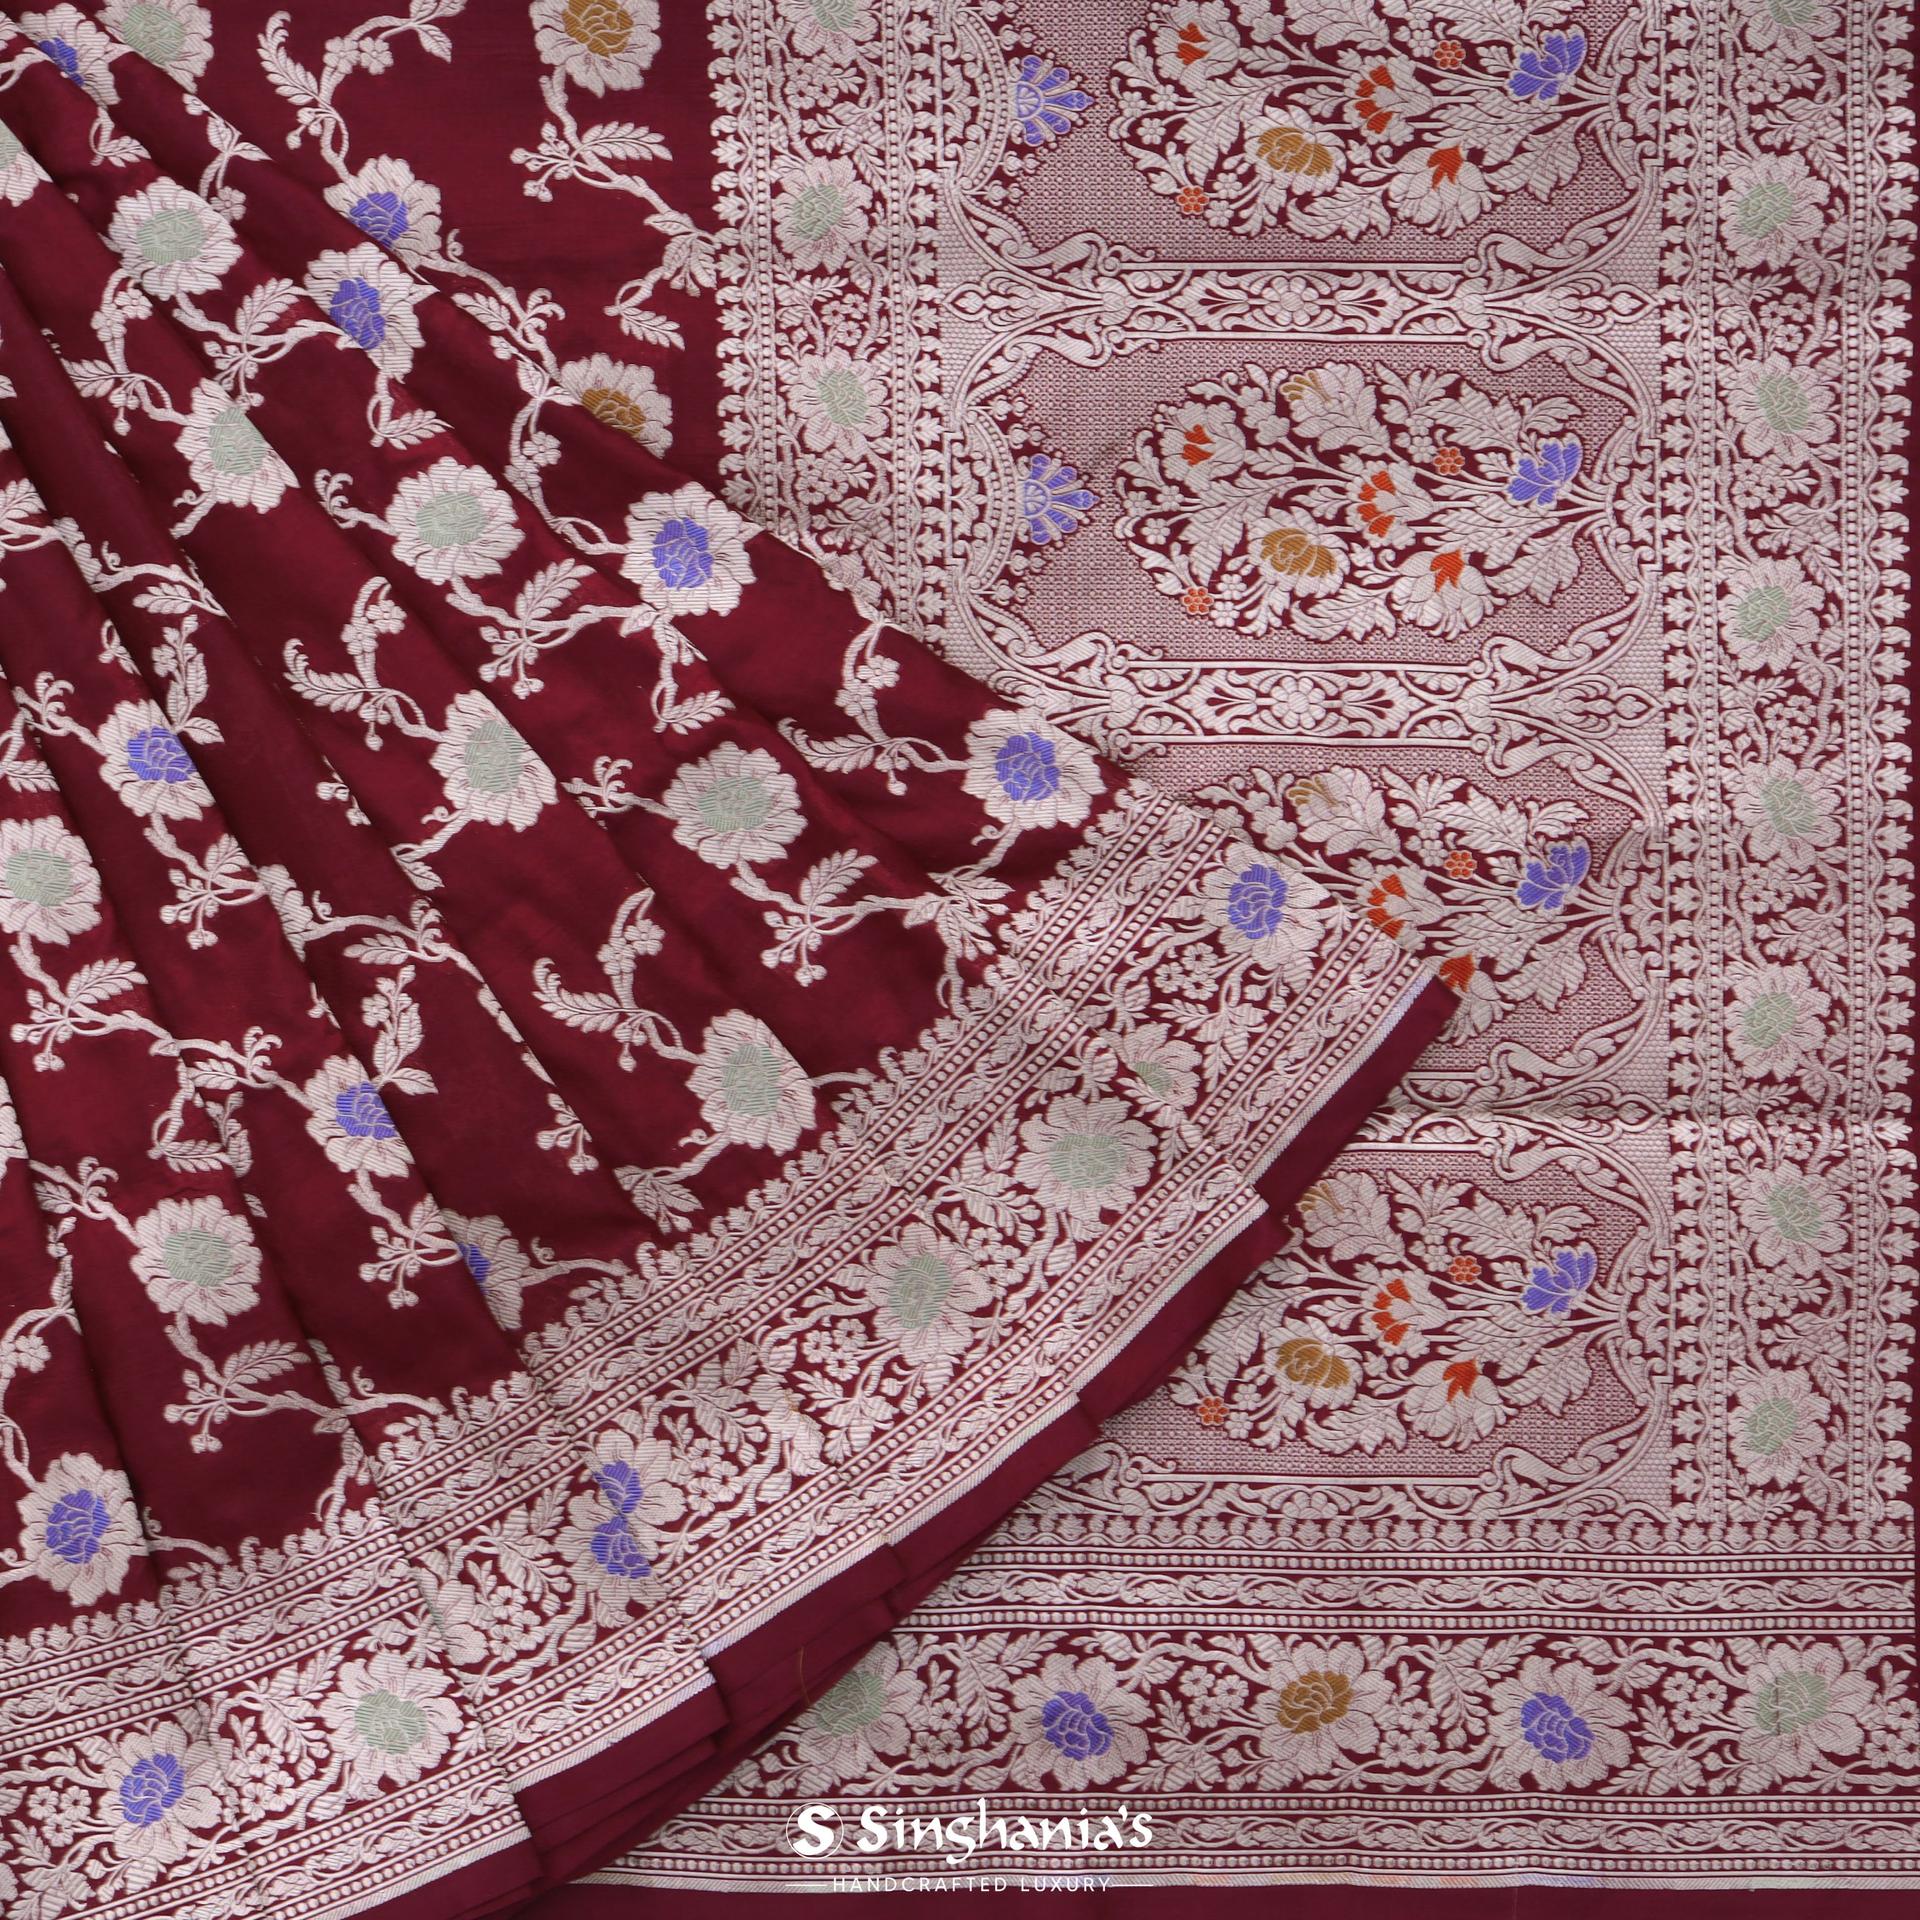 mahogany-red-banarasi-silk-saree-with-floral-jaal-pattern